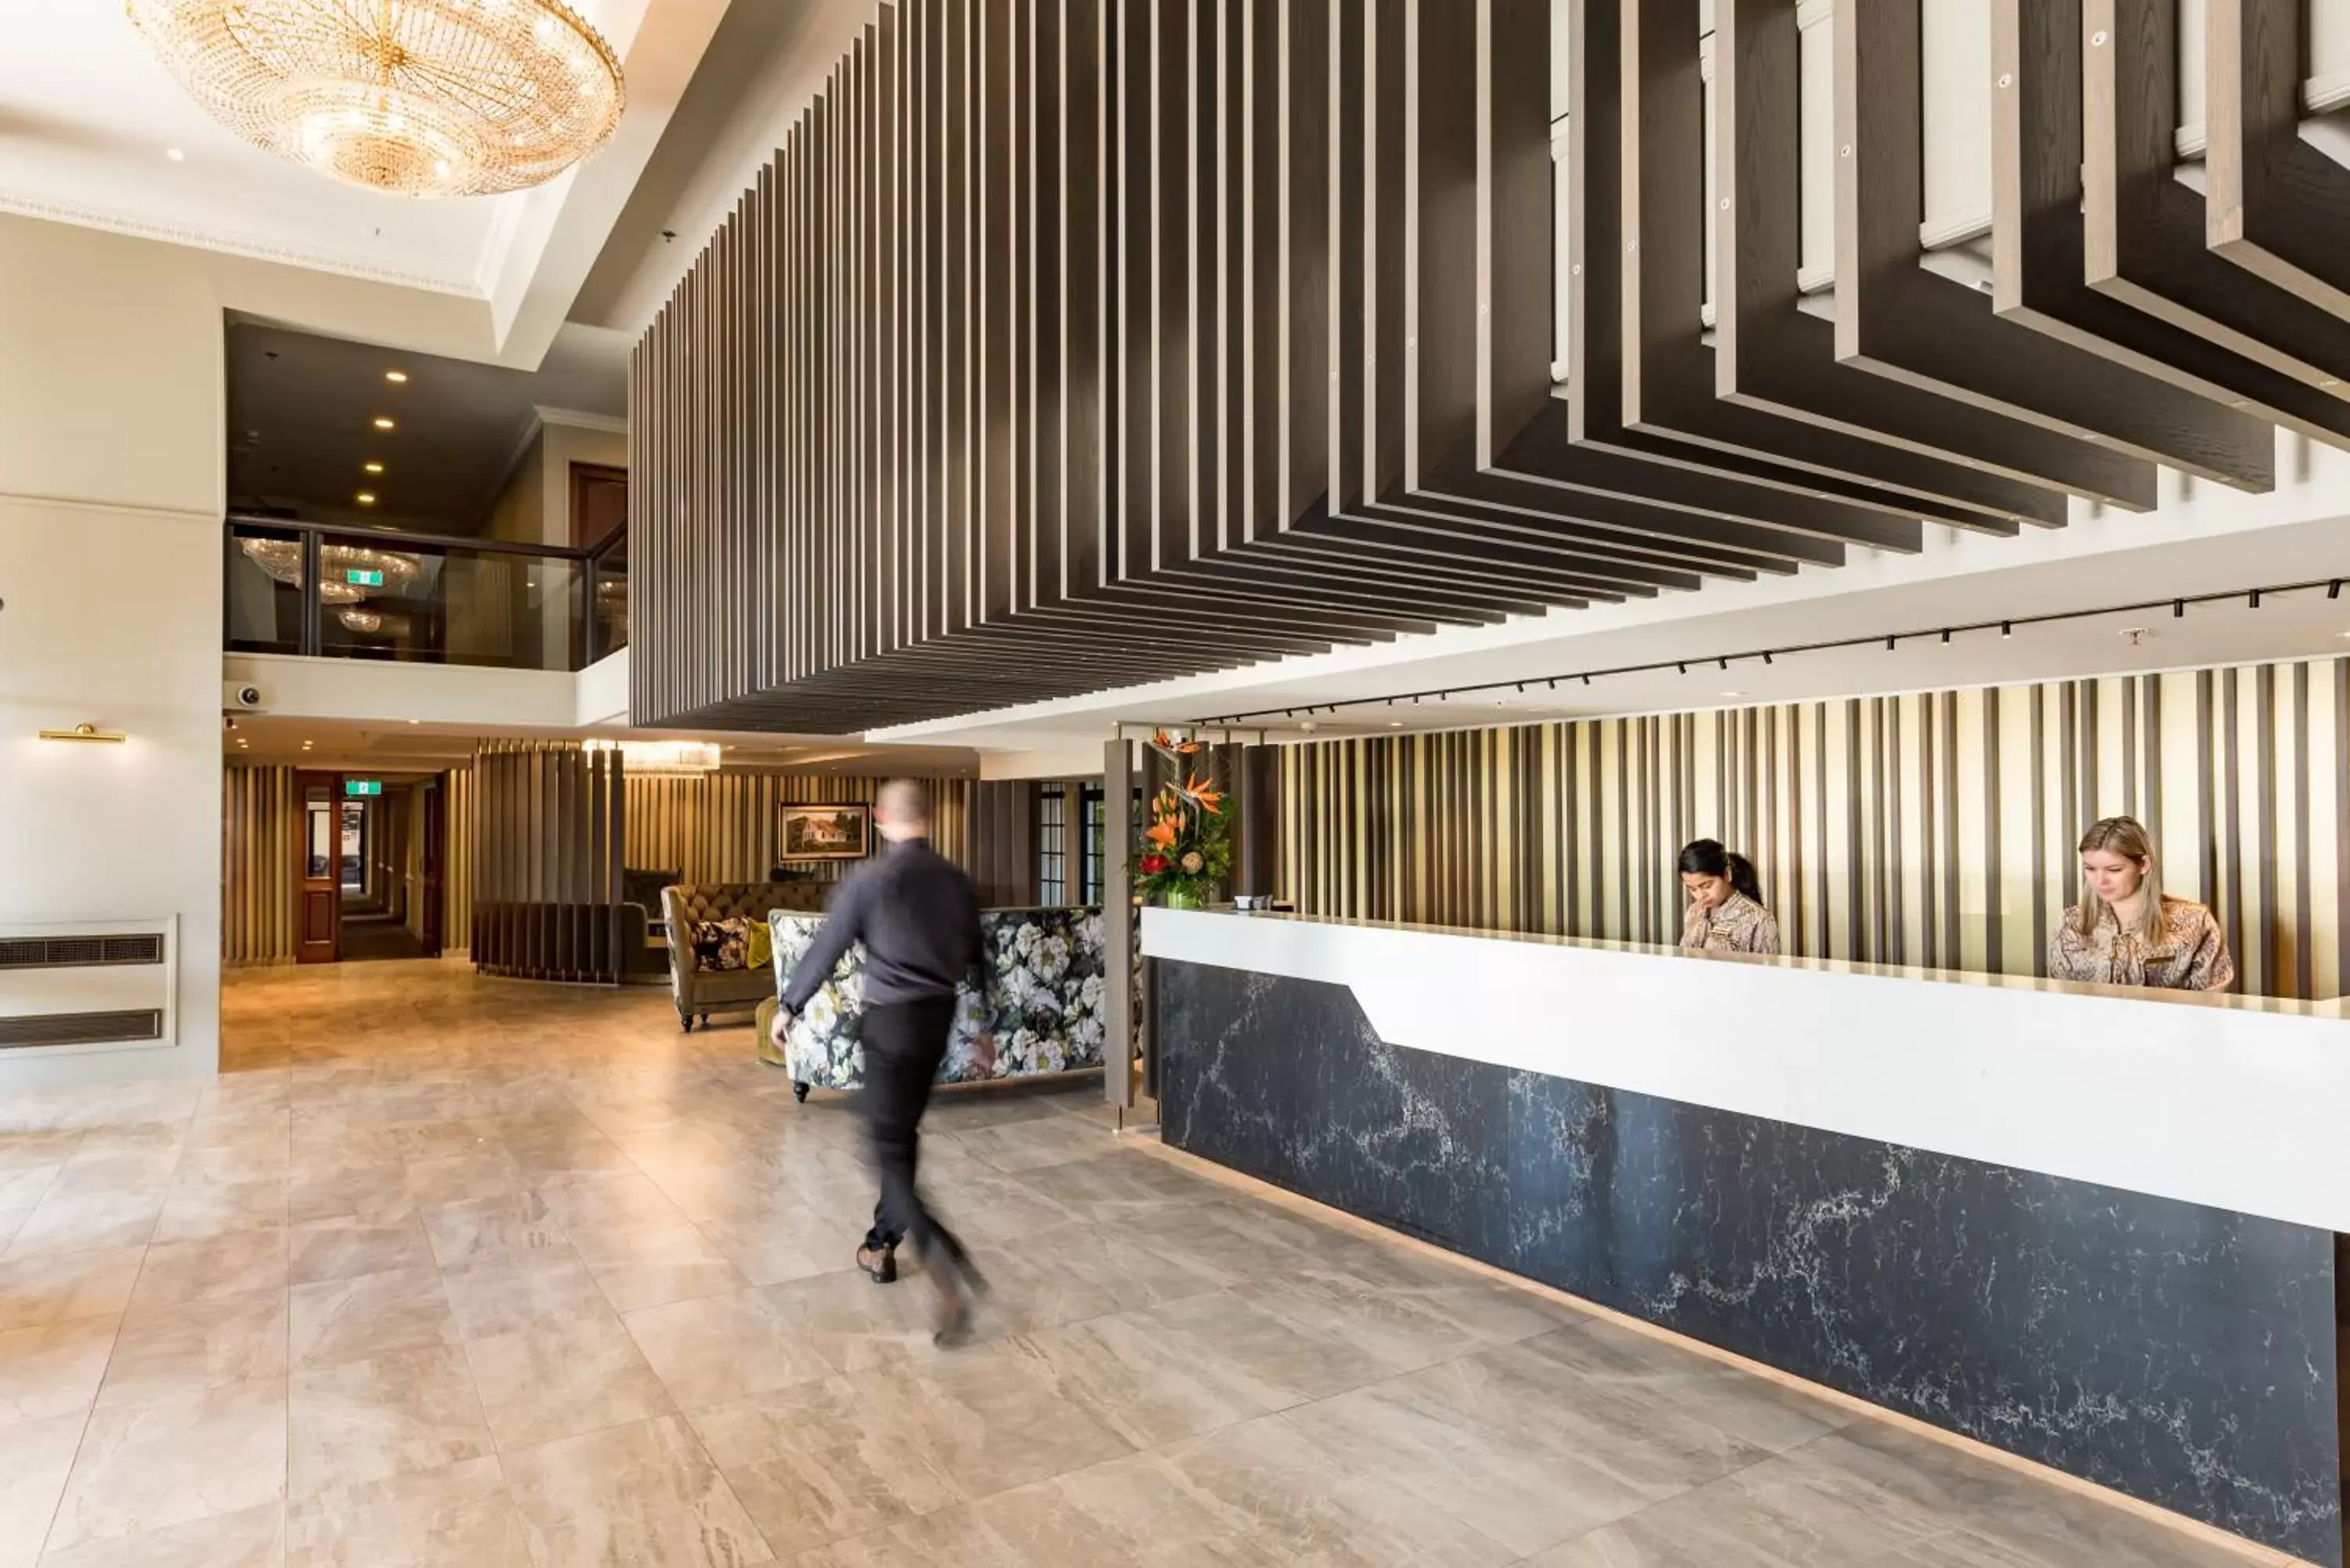 Lobby or reception in Distinction Hotel Rotorua